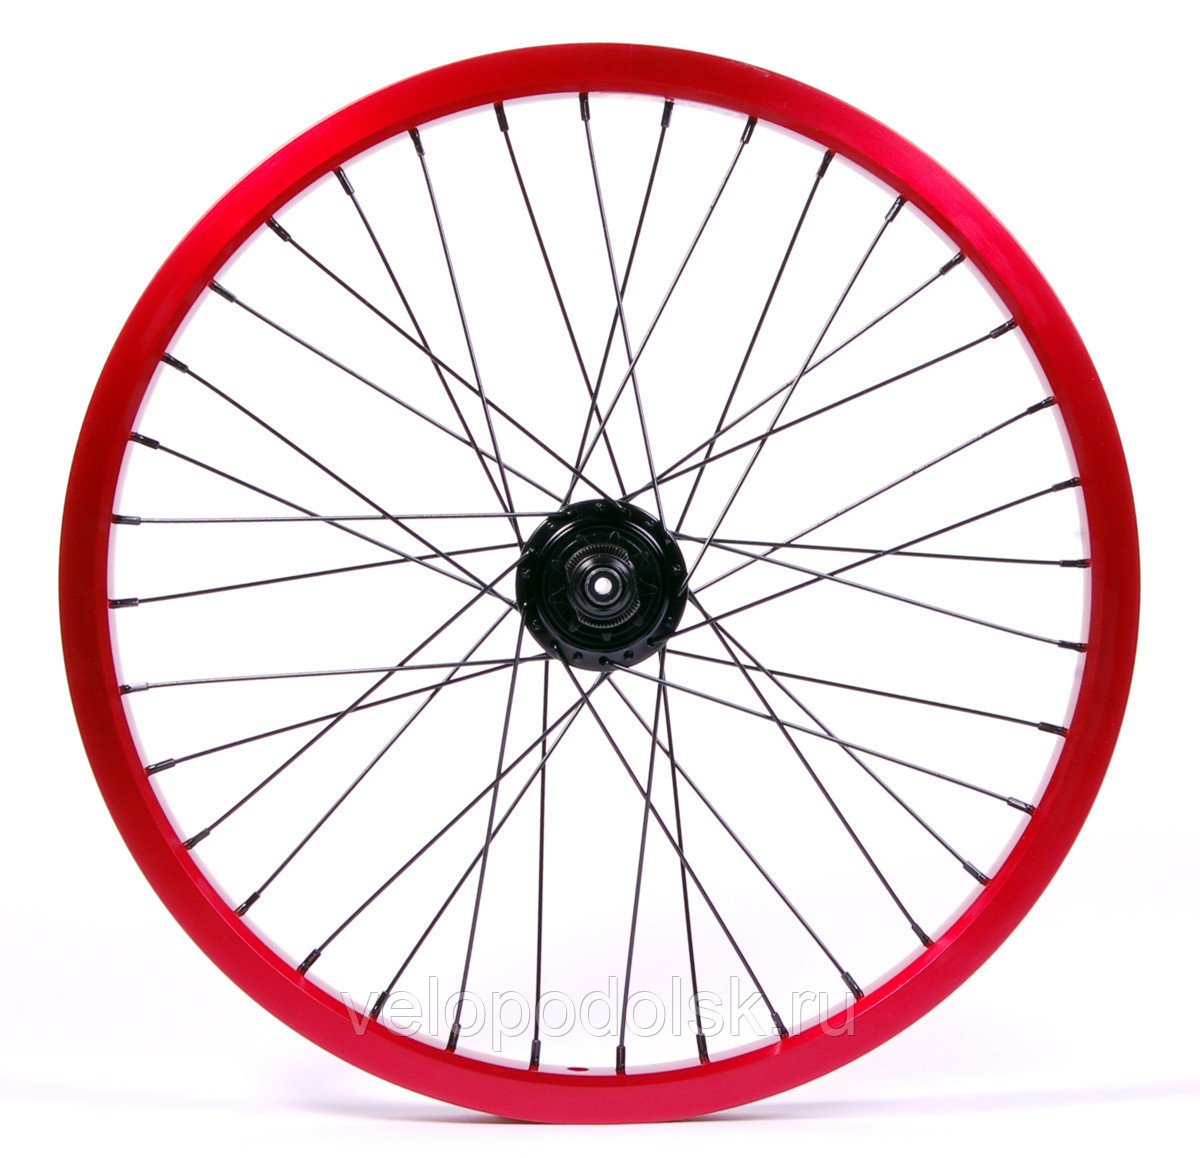 Сколько стоит заднее колесо на велосипед. Заднее колесо на велосипед 26 дюймов 7 скоростей. 26 Колеса на велосипед. Колесо 26" (MTB) зад. Аллюмин.двойн. Обод (дисковый тормоз). Колесо 26 дюймов для велосипеда заднее.